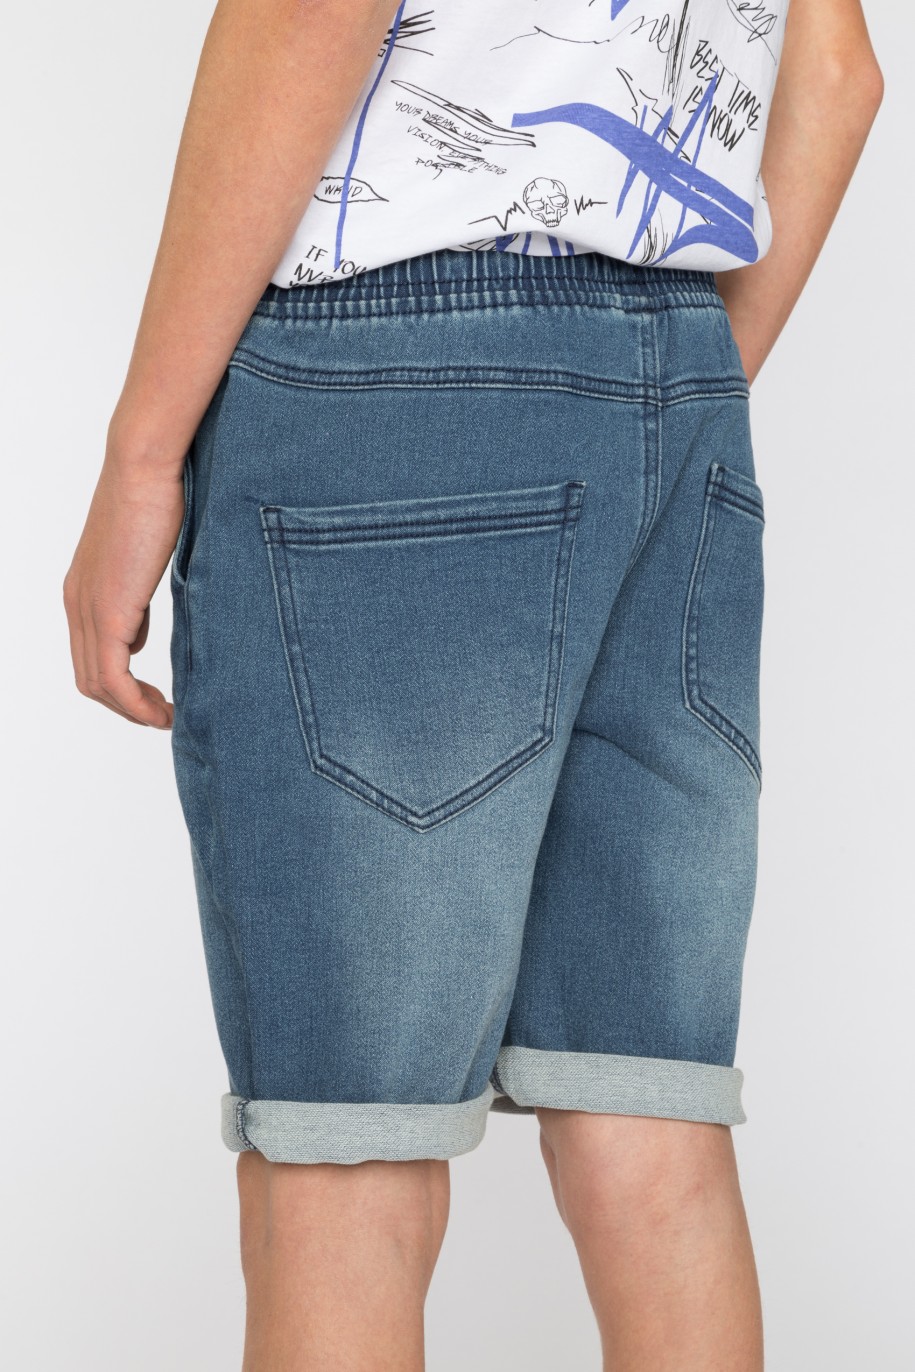 Krótkie niebieskie jeansowe spodenki dla chłopaka - 41205